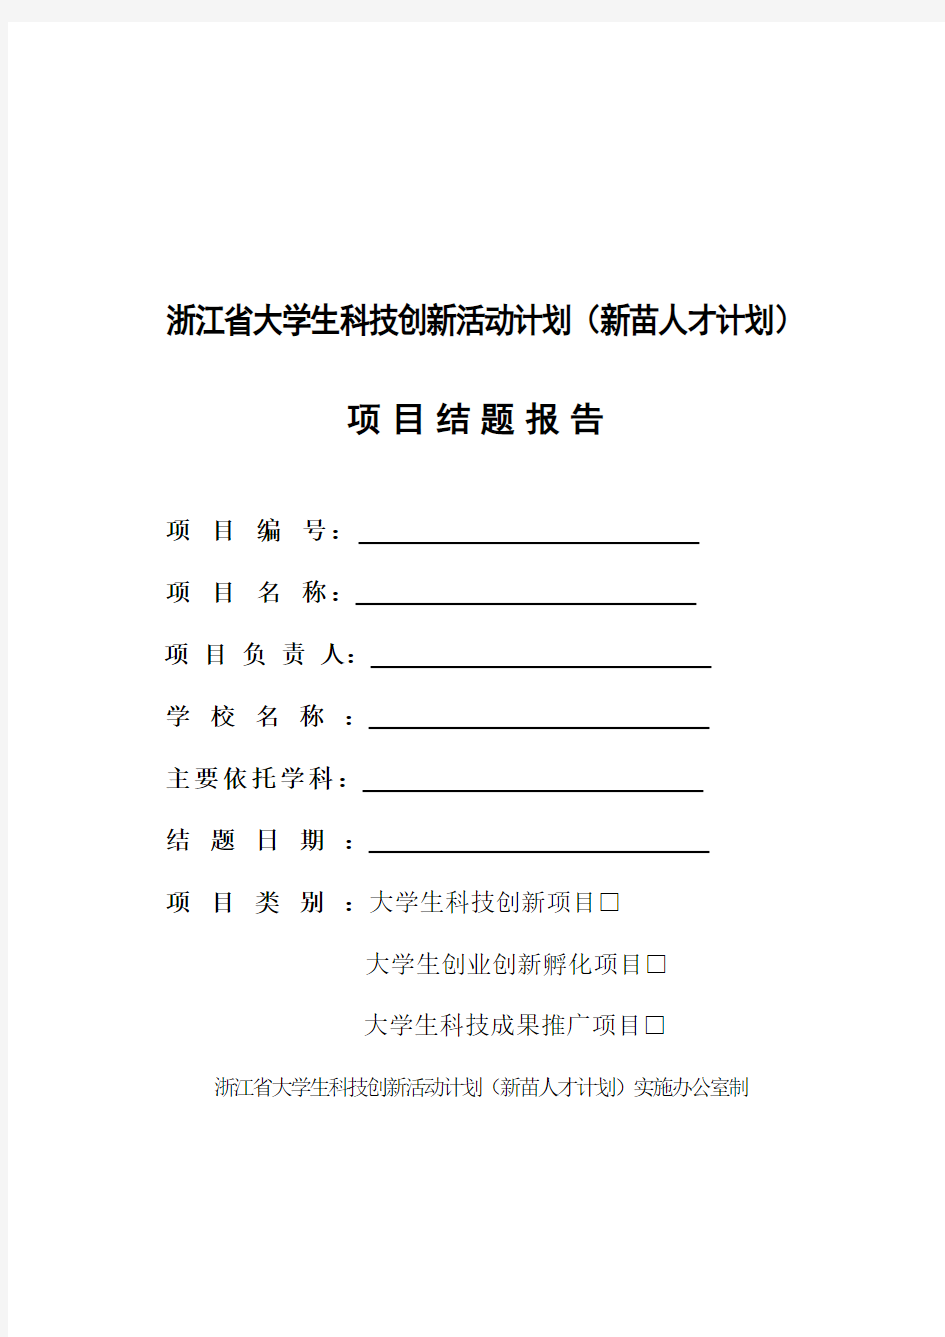 浙江省大学生科技创新活动计划(新苗人才计划)项目结题报告书